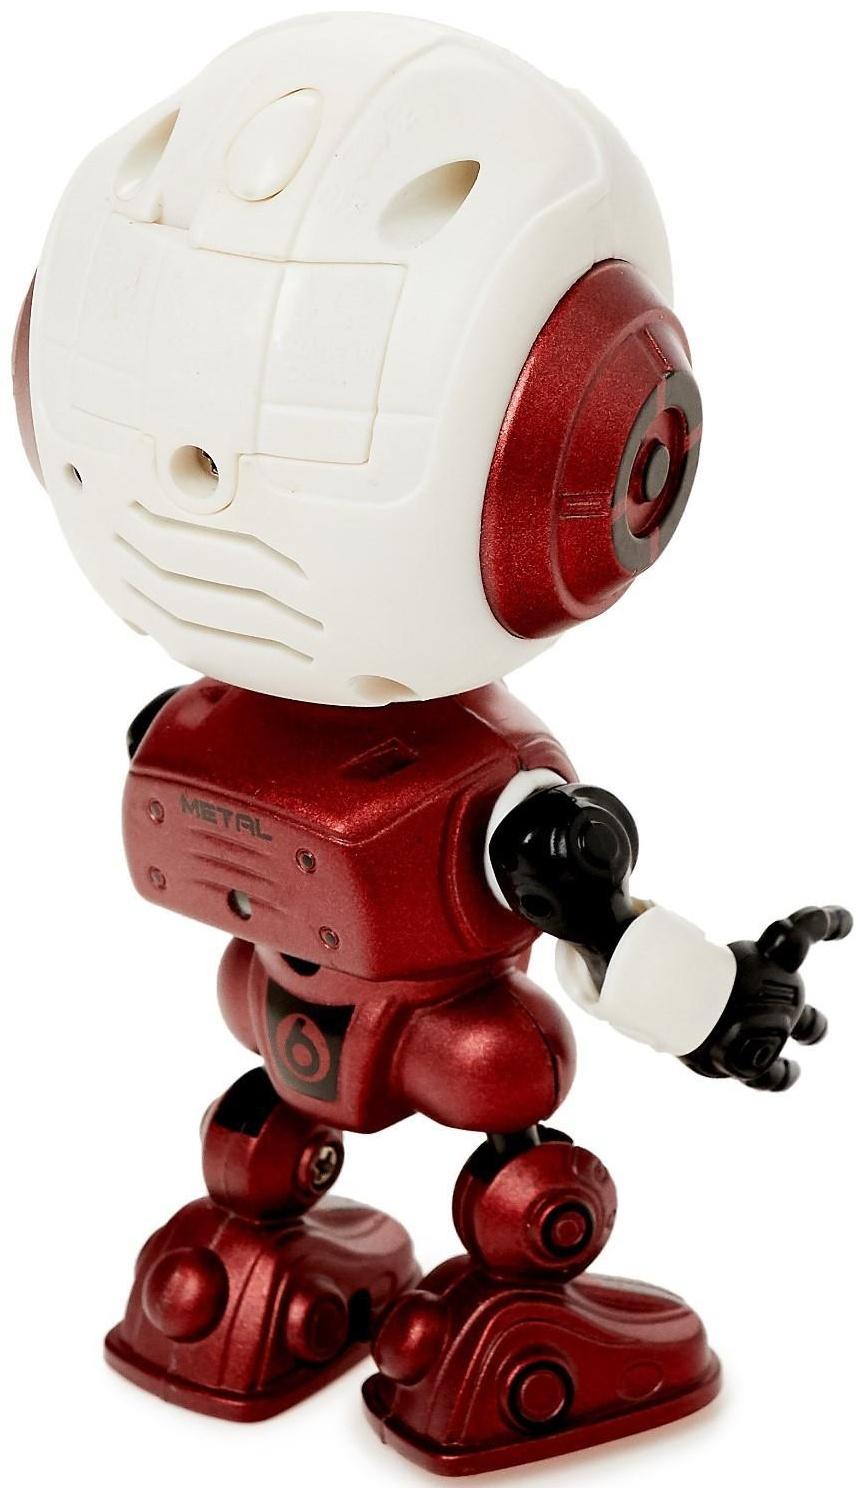 Робот «Повторюшка», реагирует на прикосновение, световые и звуковые эффекты, цвет красный